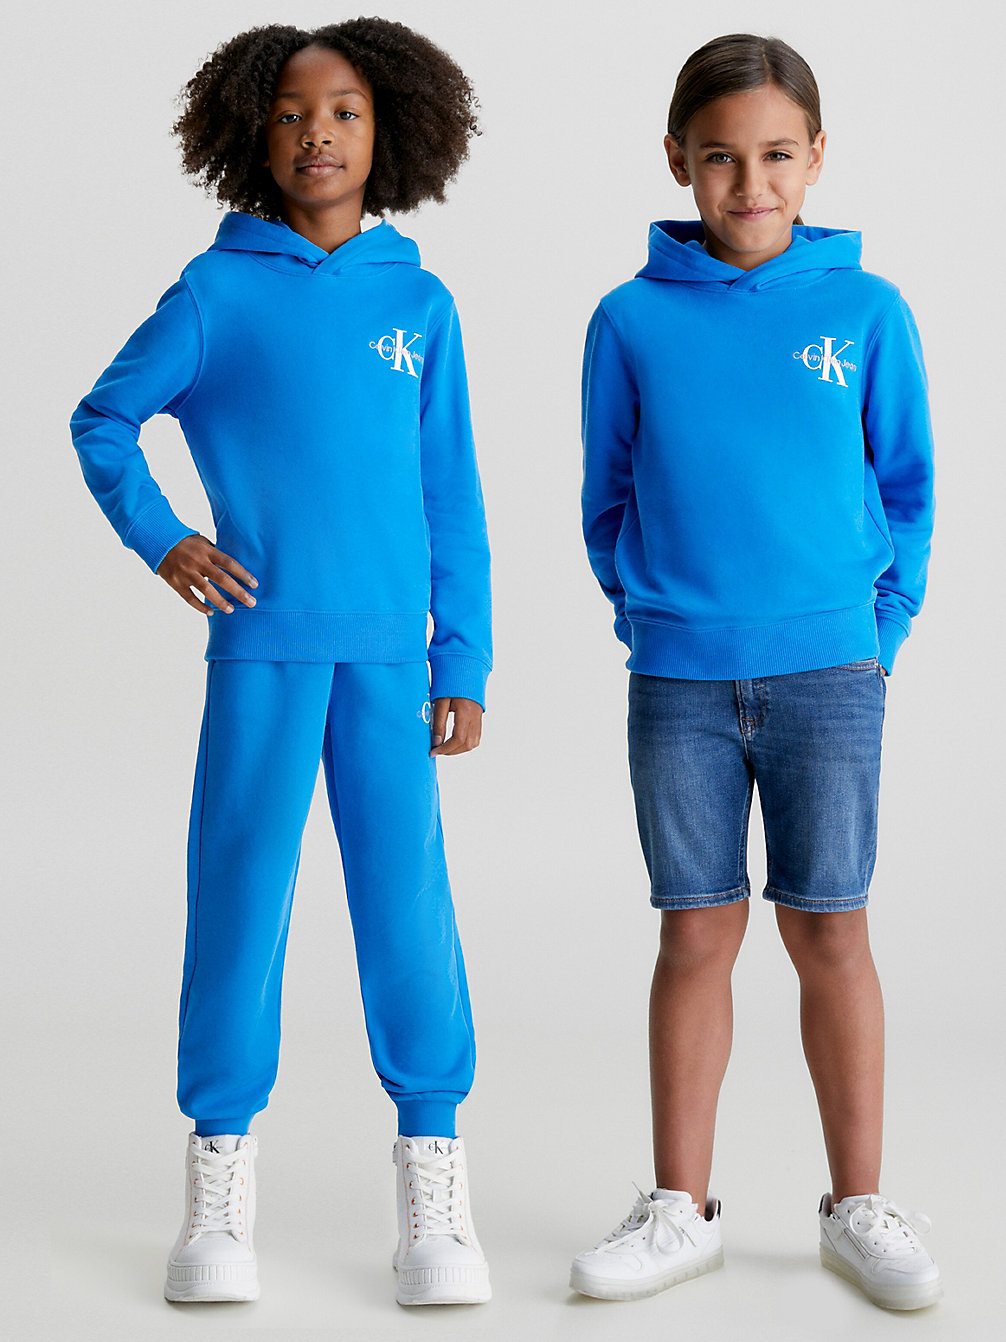 CORRIB RIVER BLUE Kinder-Logo-Hoodie Aus Bio-Baumwolle undefined kids unisex Calvin Klein